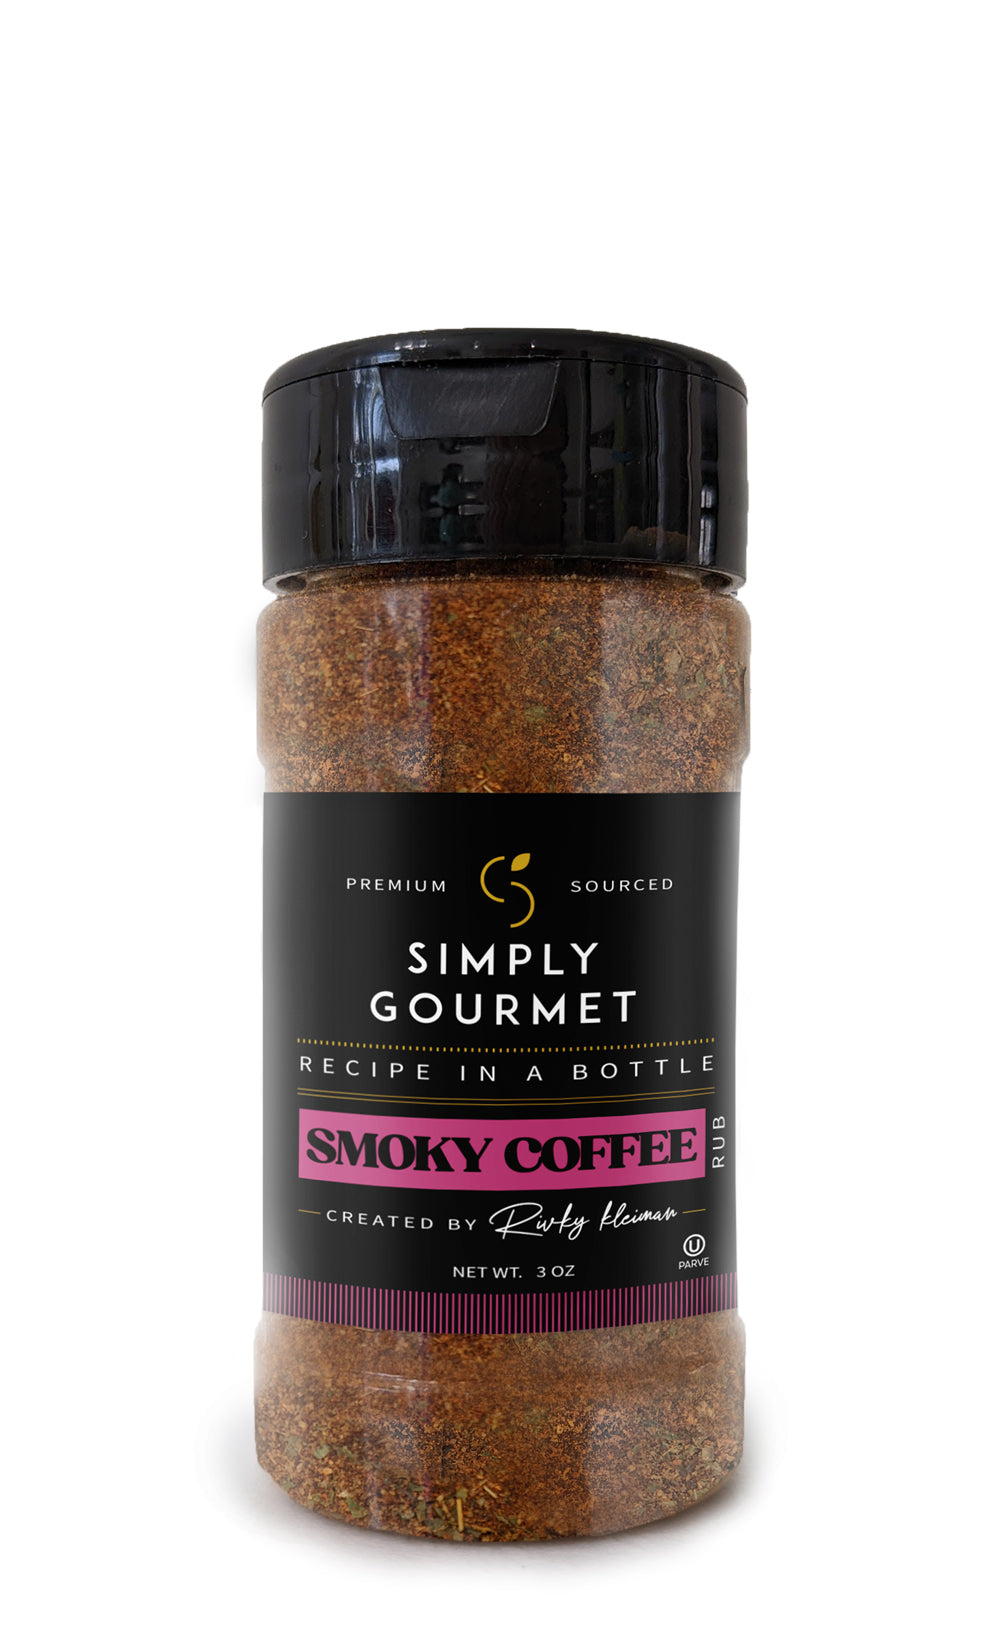 Smoky Coffee - Recipe in a Bottle